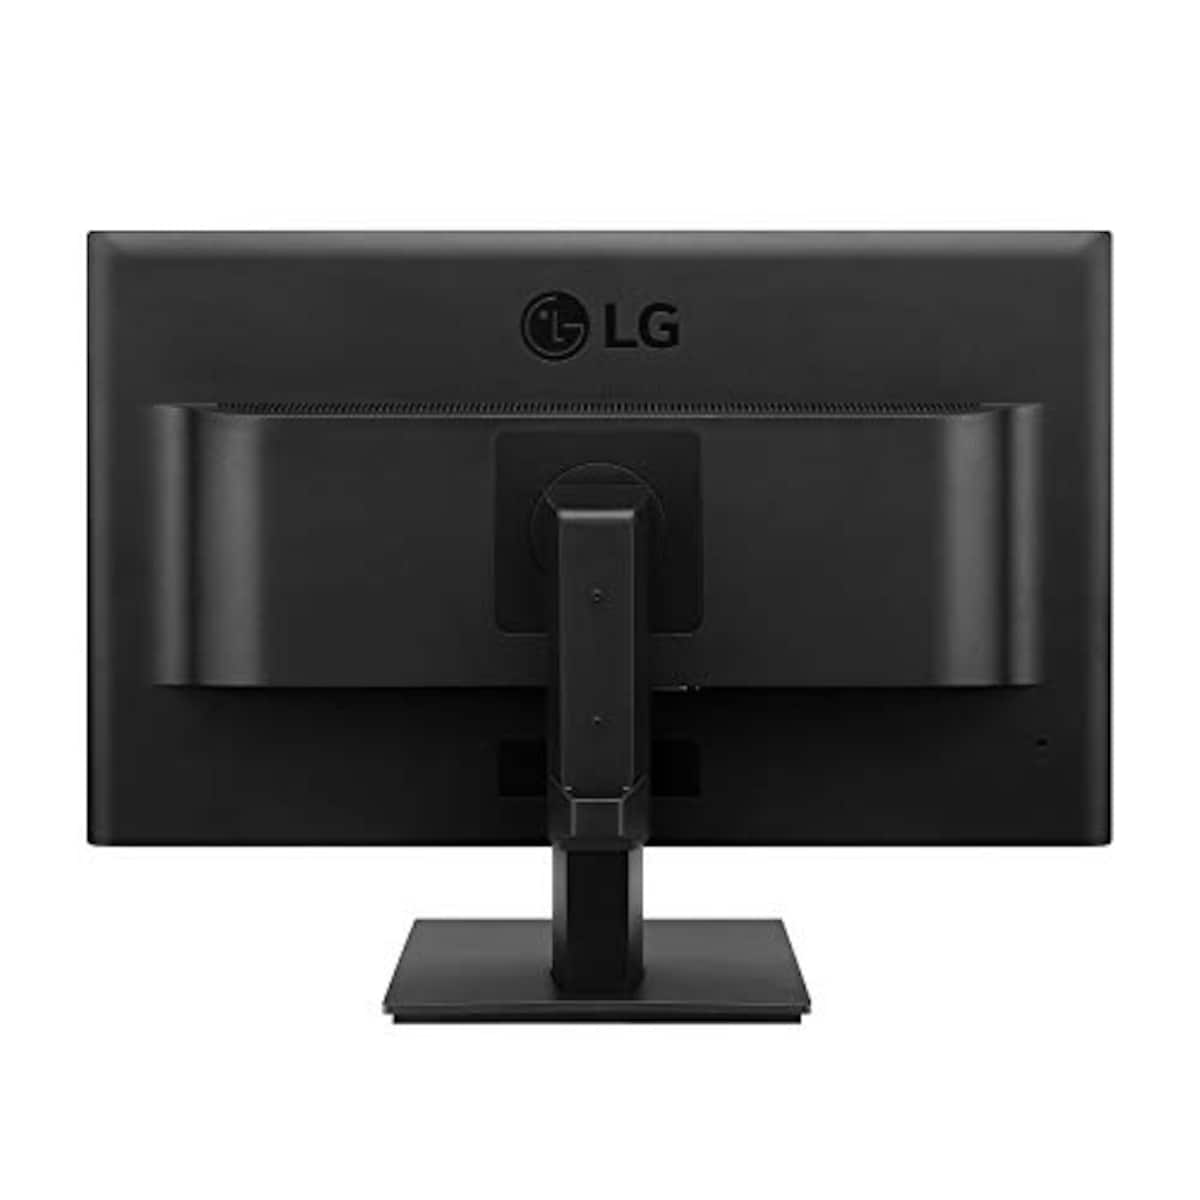  LG モニター ディスプレイ 24BK550Y-B 23.8インチ/フルHD/IPS 非光沢/HDMI,DP,DVI,D-Sub/ピボット,高さ調節,スイベル/スピーカー内蔵/フリッカーセーフ、ブルーライト低減画像4 